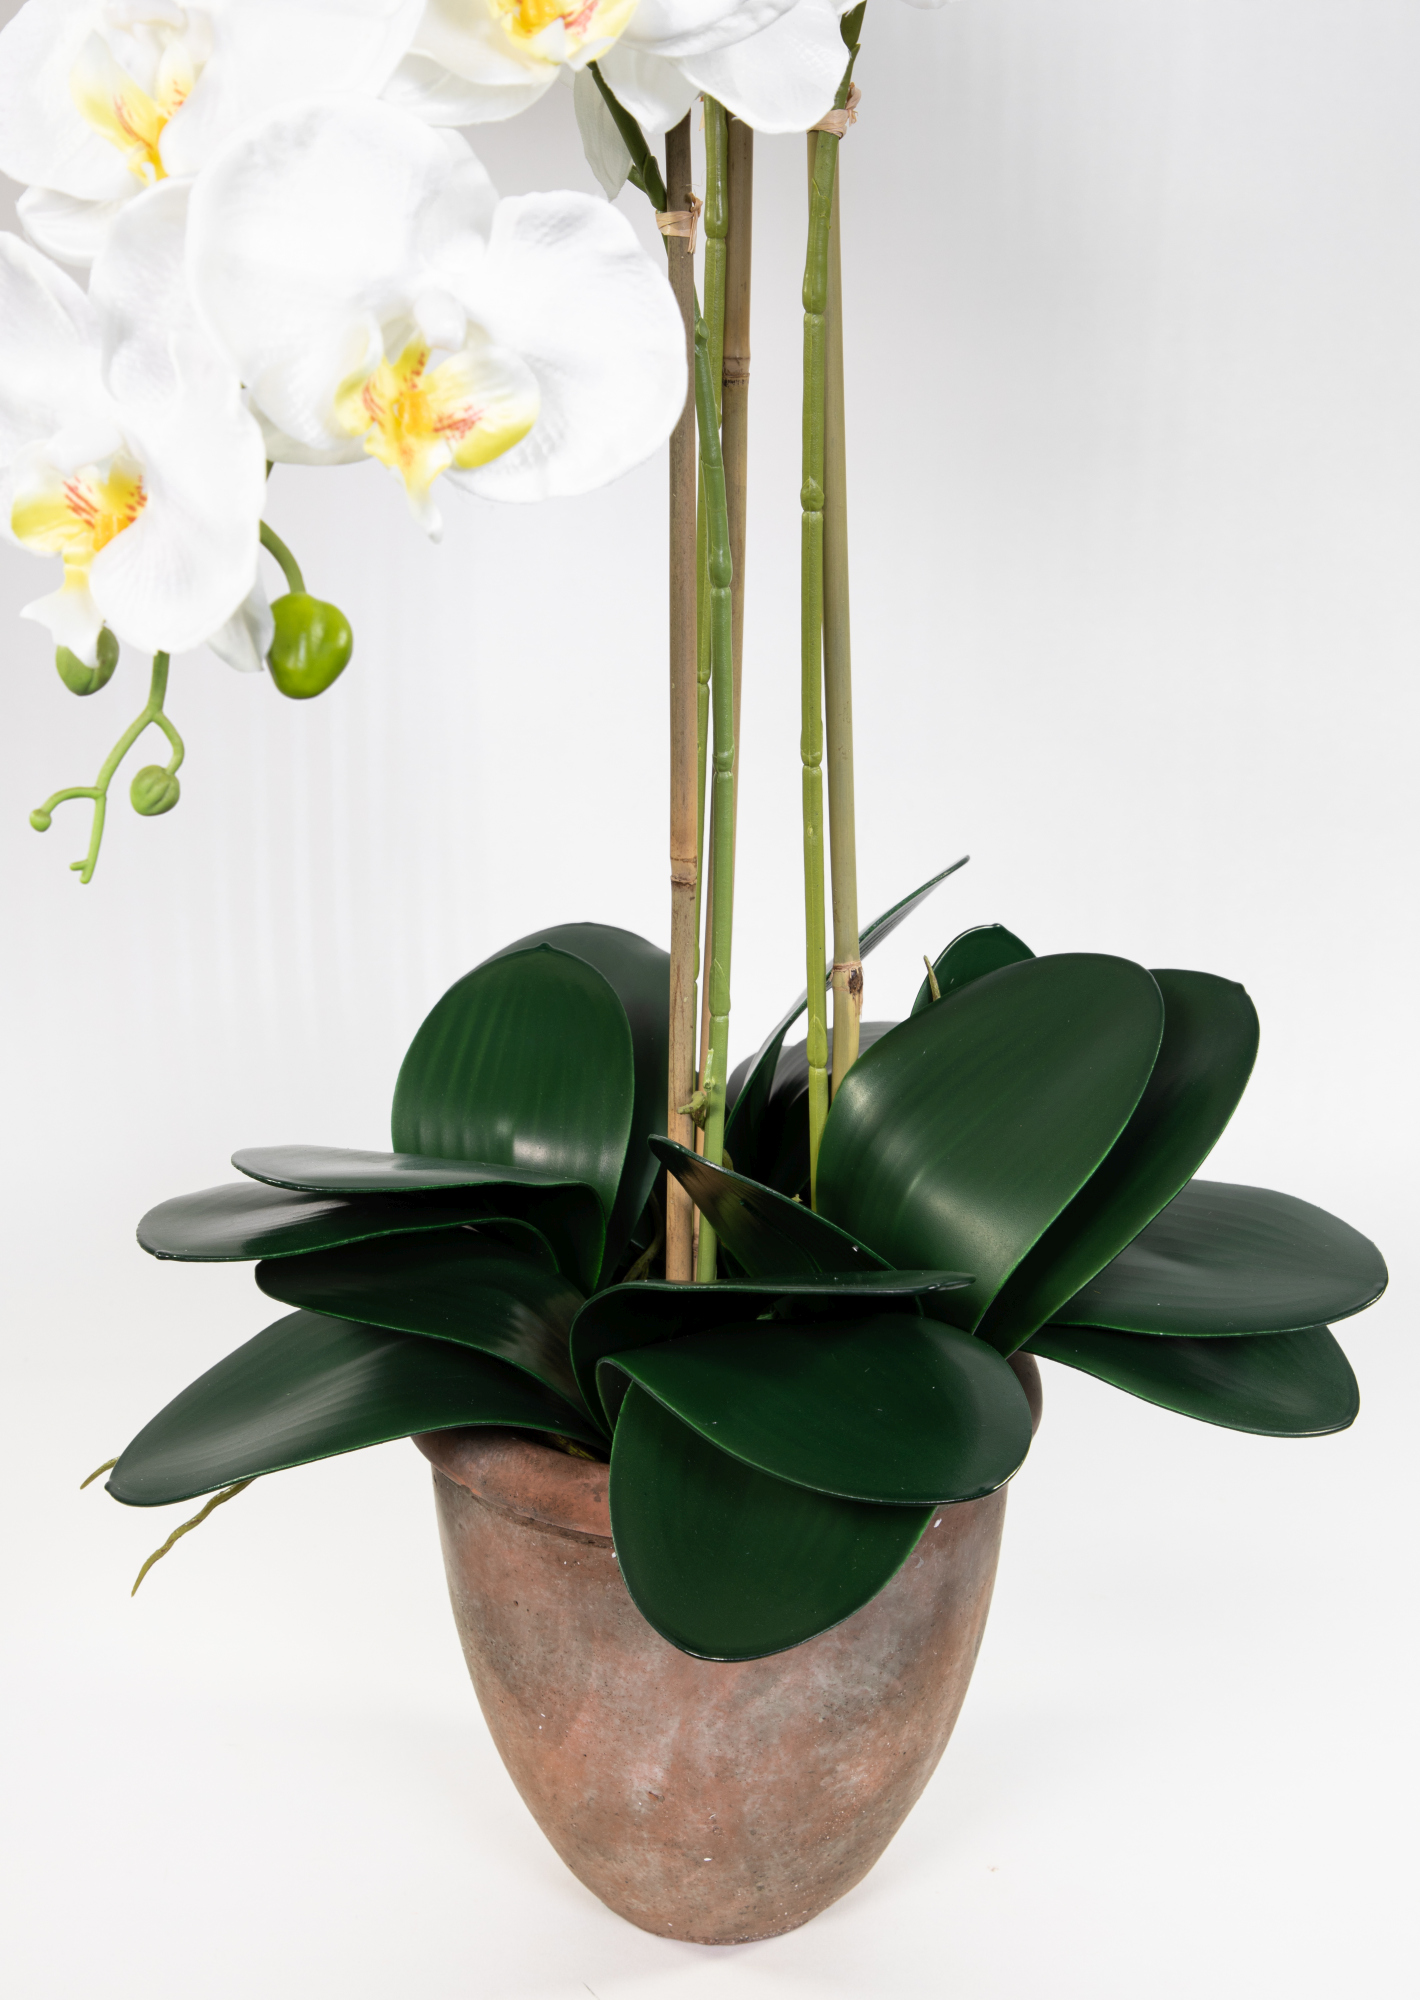 Orchidee 75x60cm weiß im Terracottatopf Kunstblumen Phalaenopsis GA Blumen künstliche